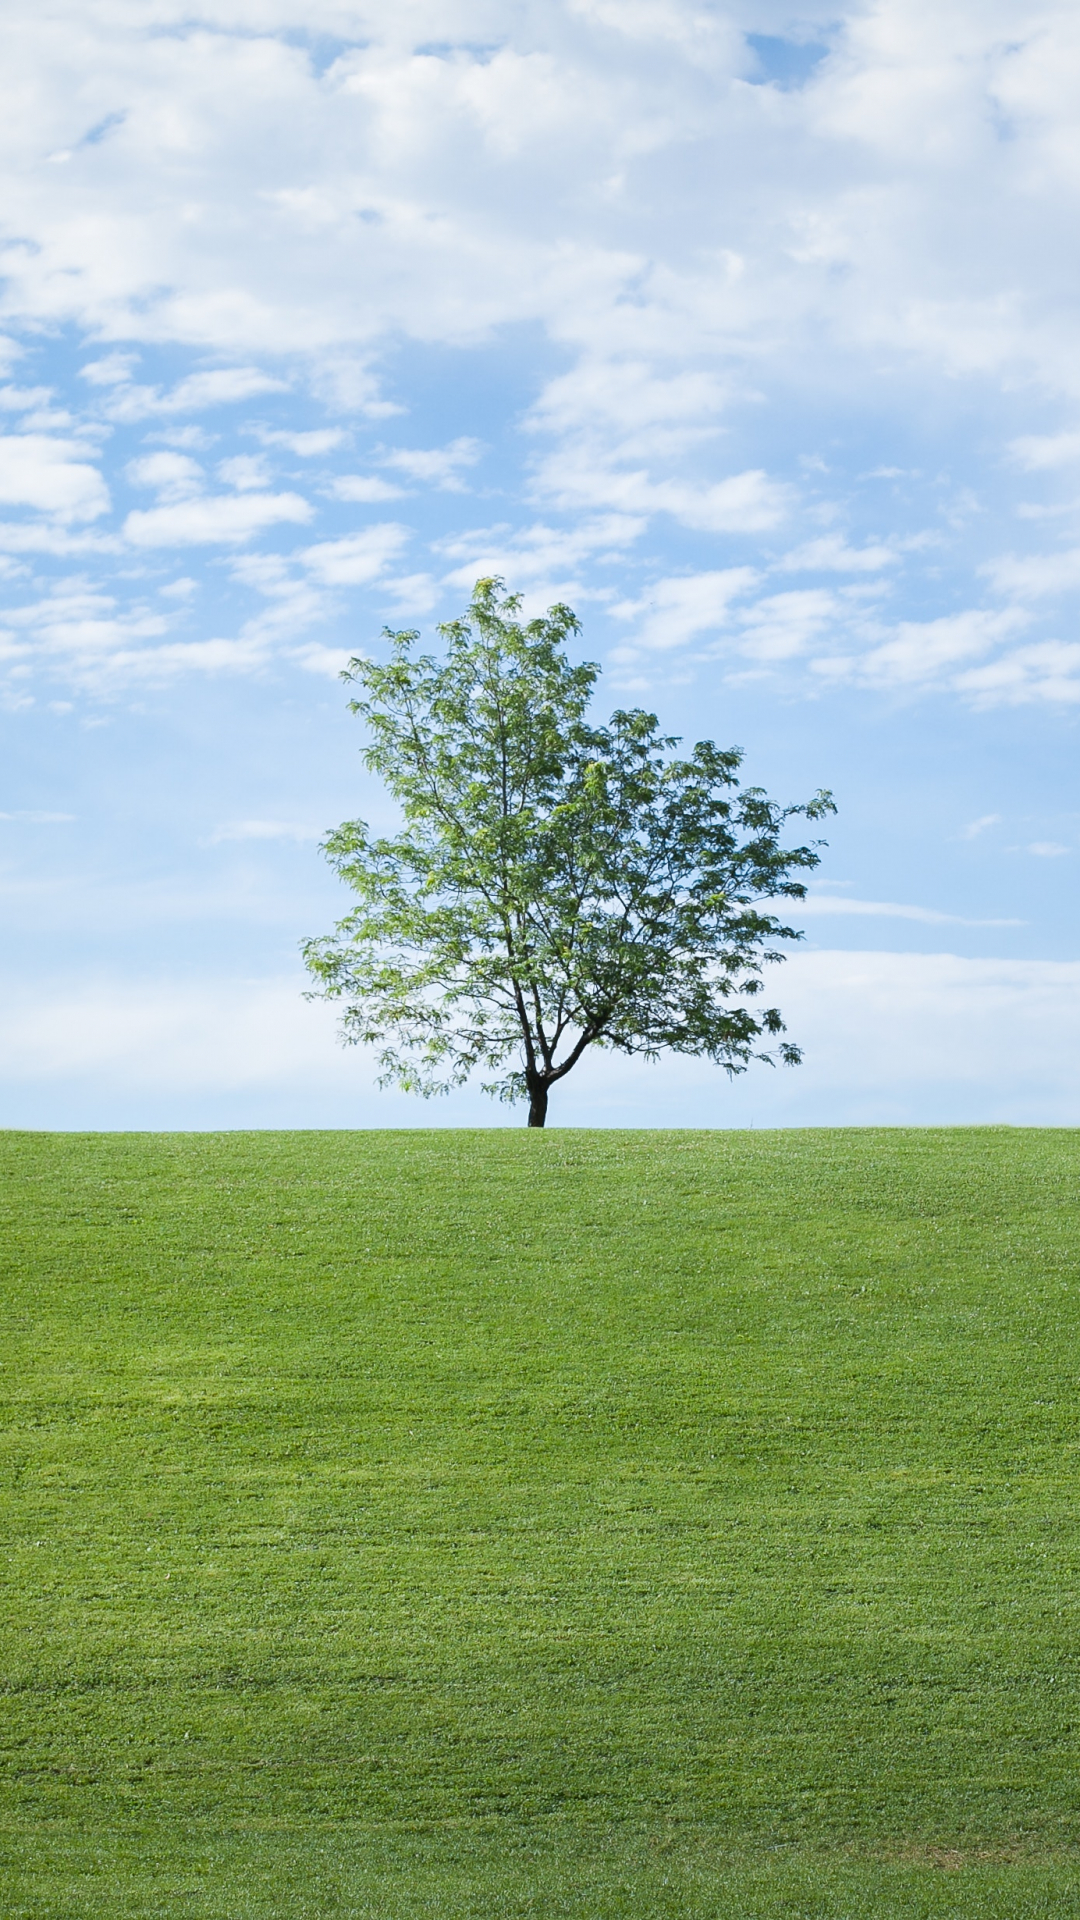  والپیپر زیبا از درخت تک در دشتی سبز و بزرگ وآسمانی آبی 